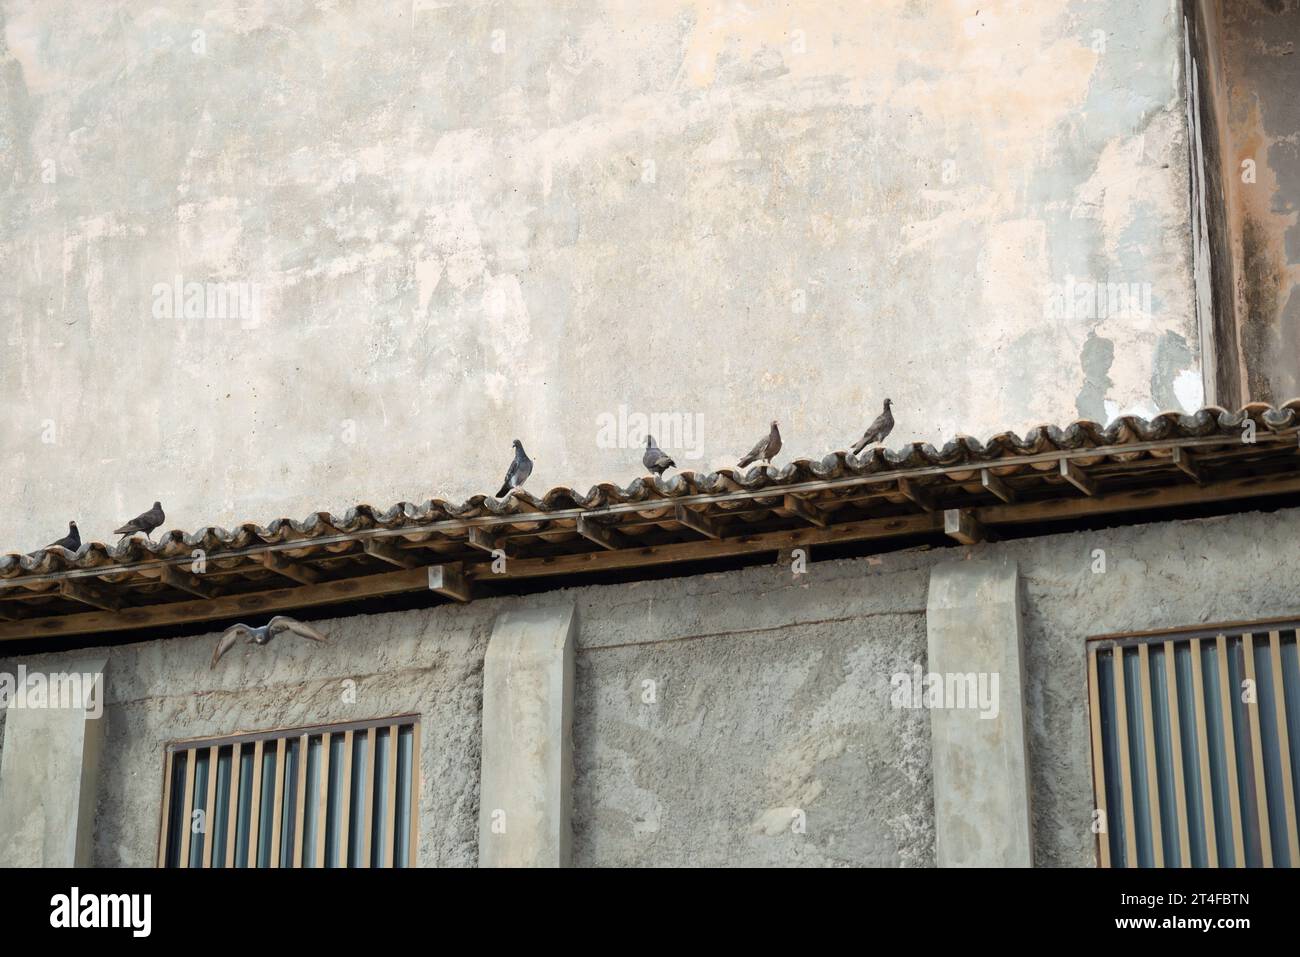 Mehrere Tauben auf dem Dach eines Hauses. Wildes Leben Stockfoto